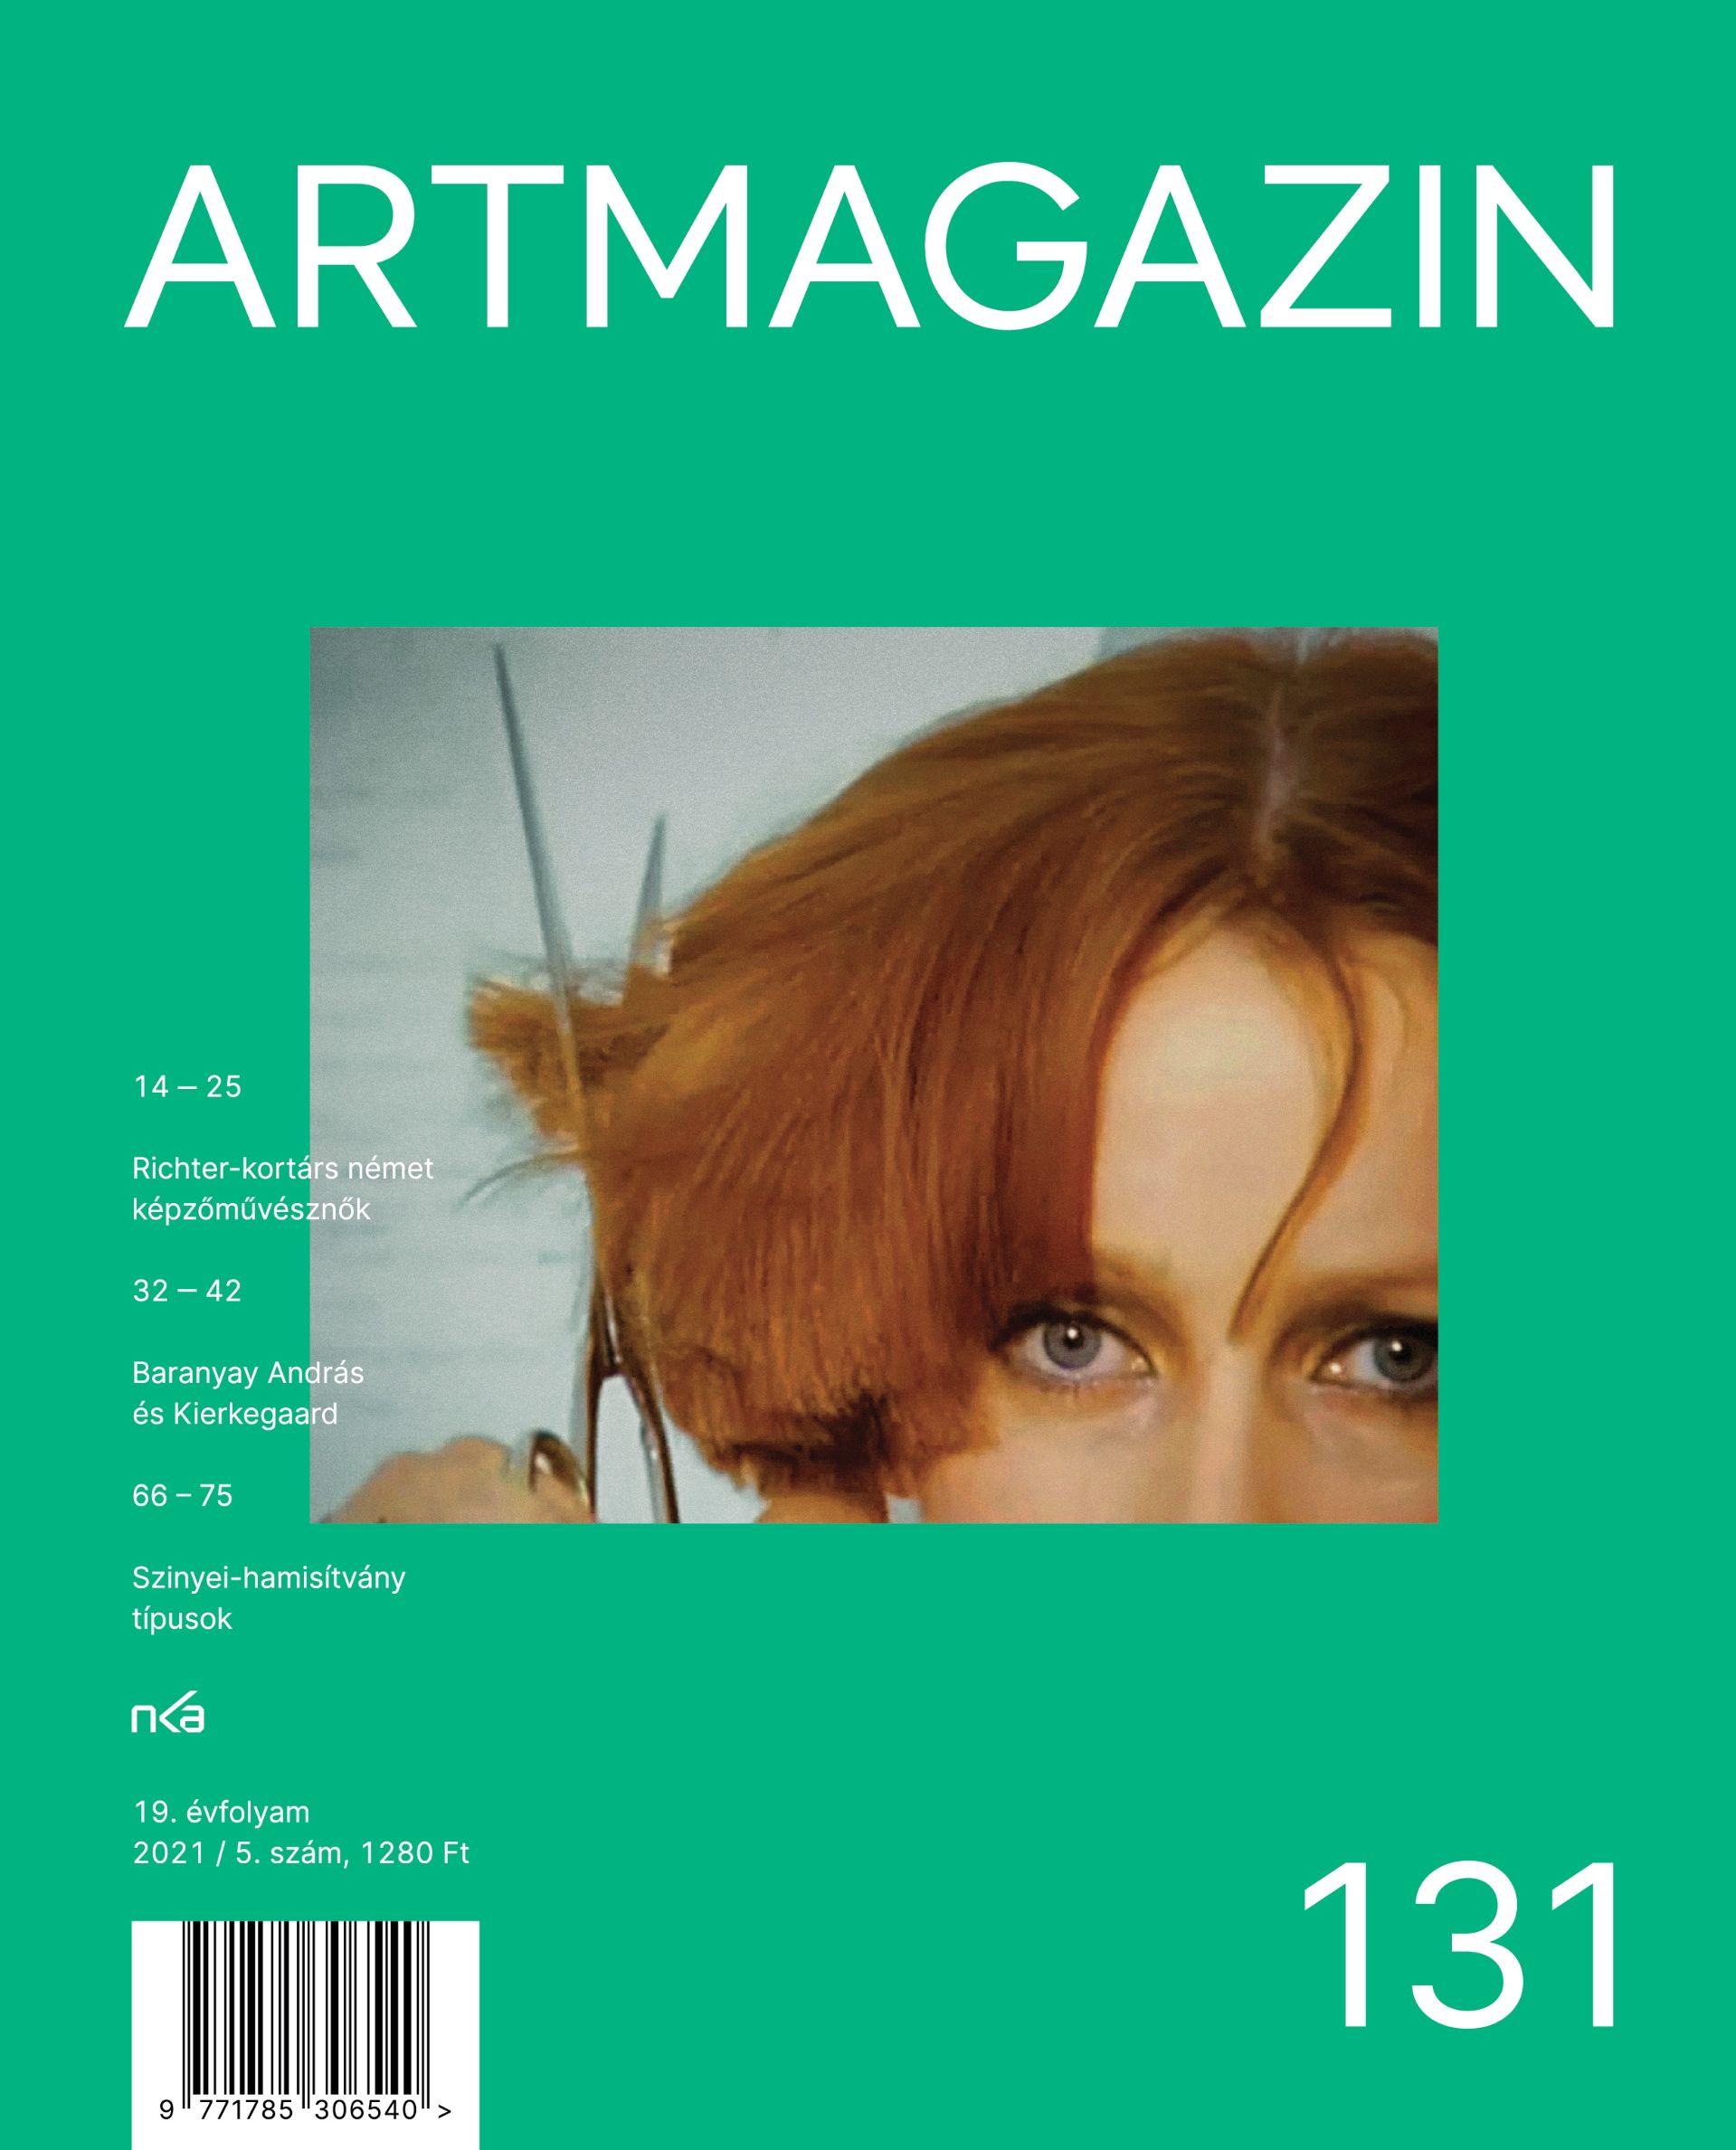 Artmagazin 131 cover